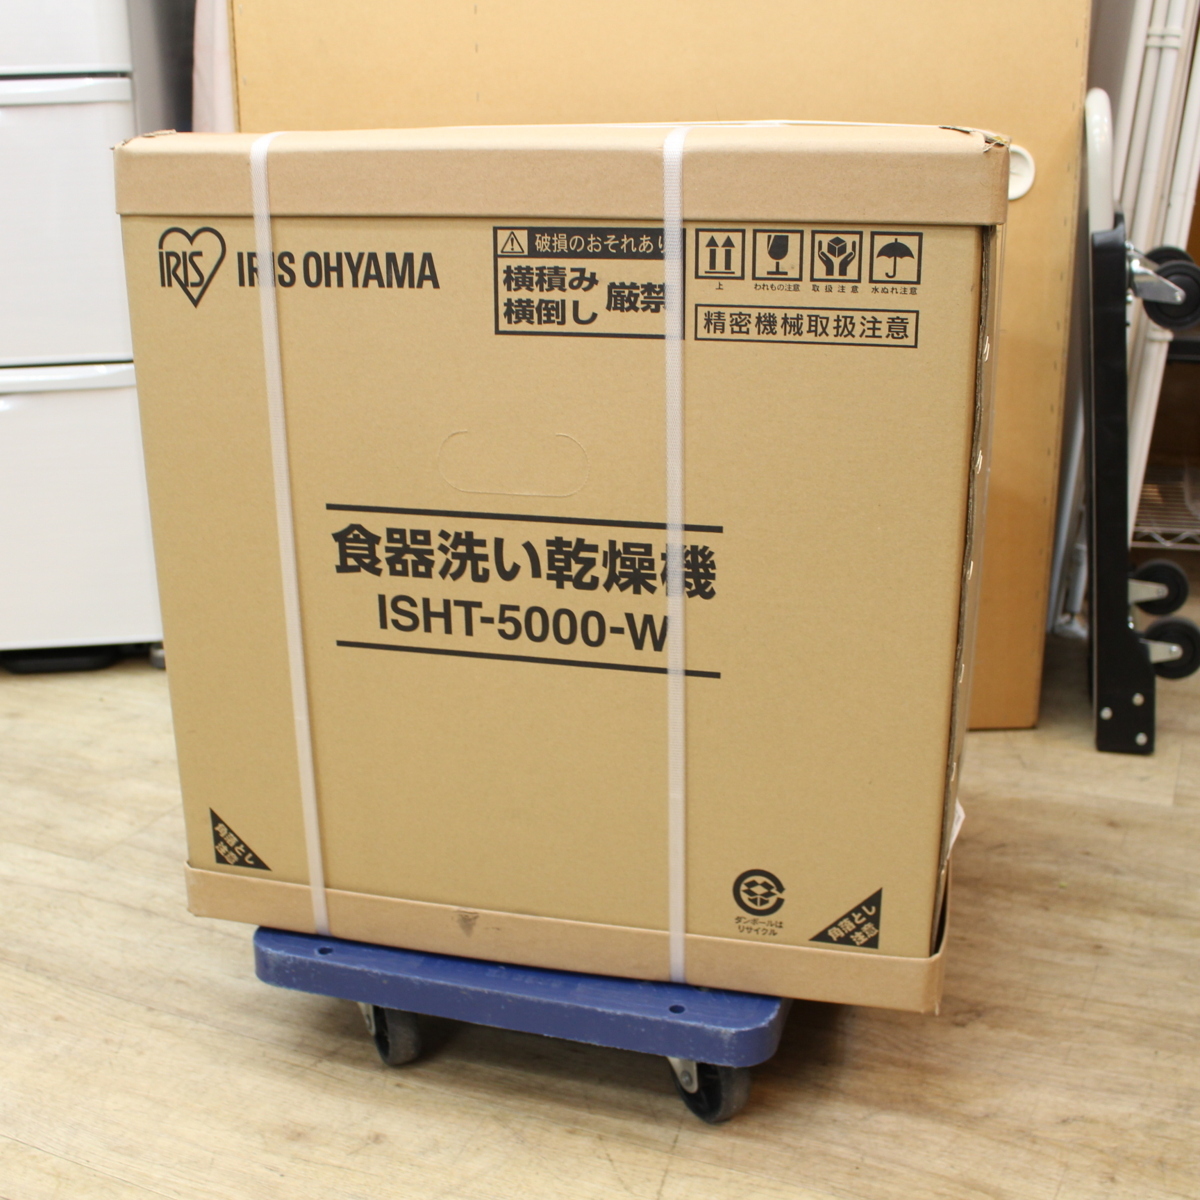 アイリスオーヤマ 食器洗い乾燥機 ISHT-5000-W ホワイト IRIS - 川崎市 ...